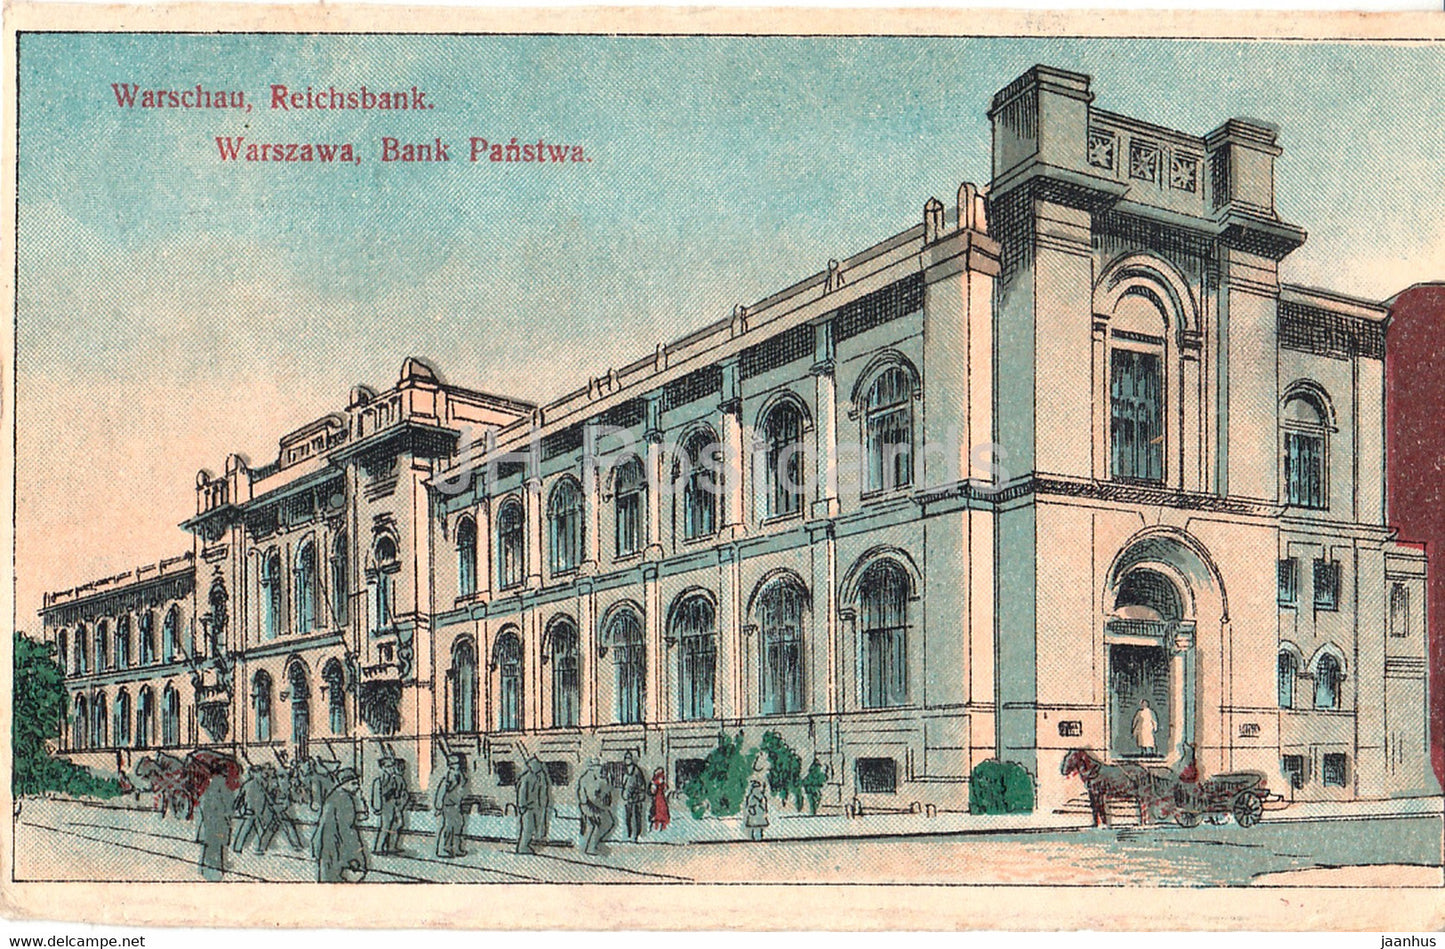 Warszawa - Warschau - Reichsbank - Bank Panstwa - Landstl Inf Batl Gotha  Feldpost - old postcard - 1916 - Poland - used - JH Postcards